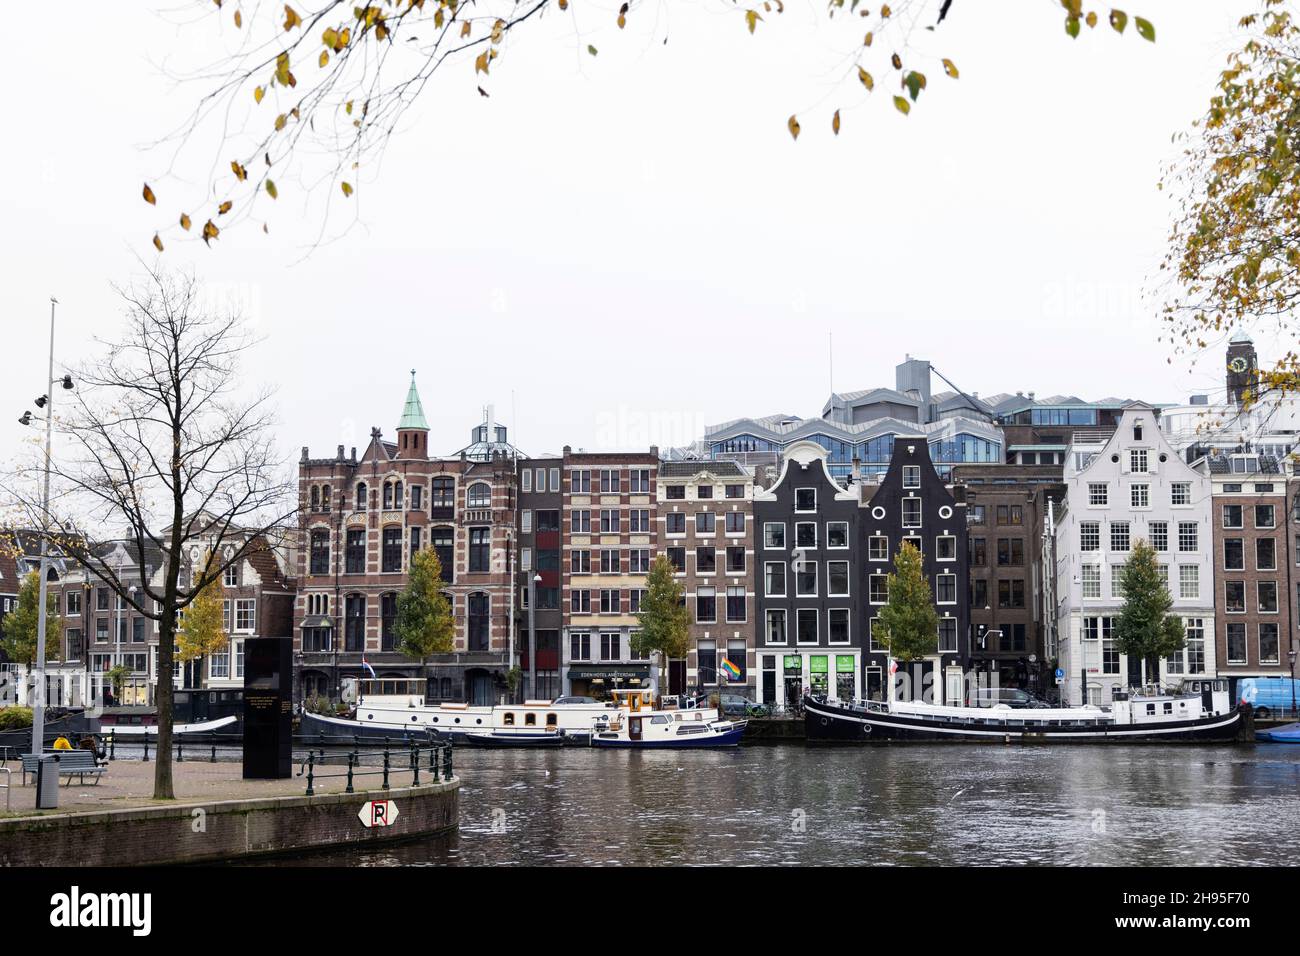 Edifici storici tradizionali e case galleggianti sull'Amstel in un giorno autunnale ad Amsterdam, Paesi Bassi. Foto Stock